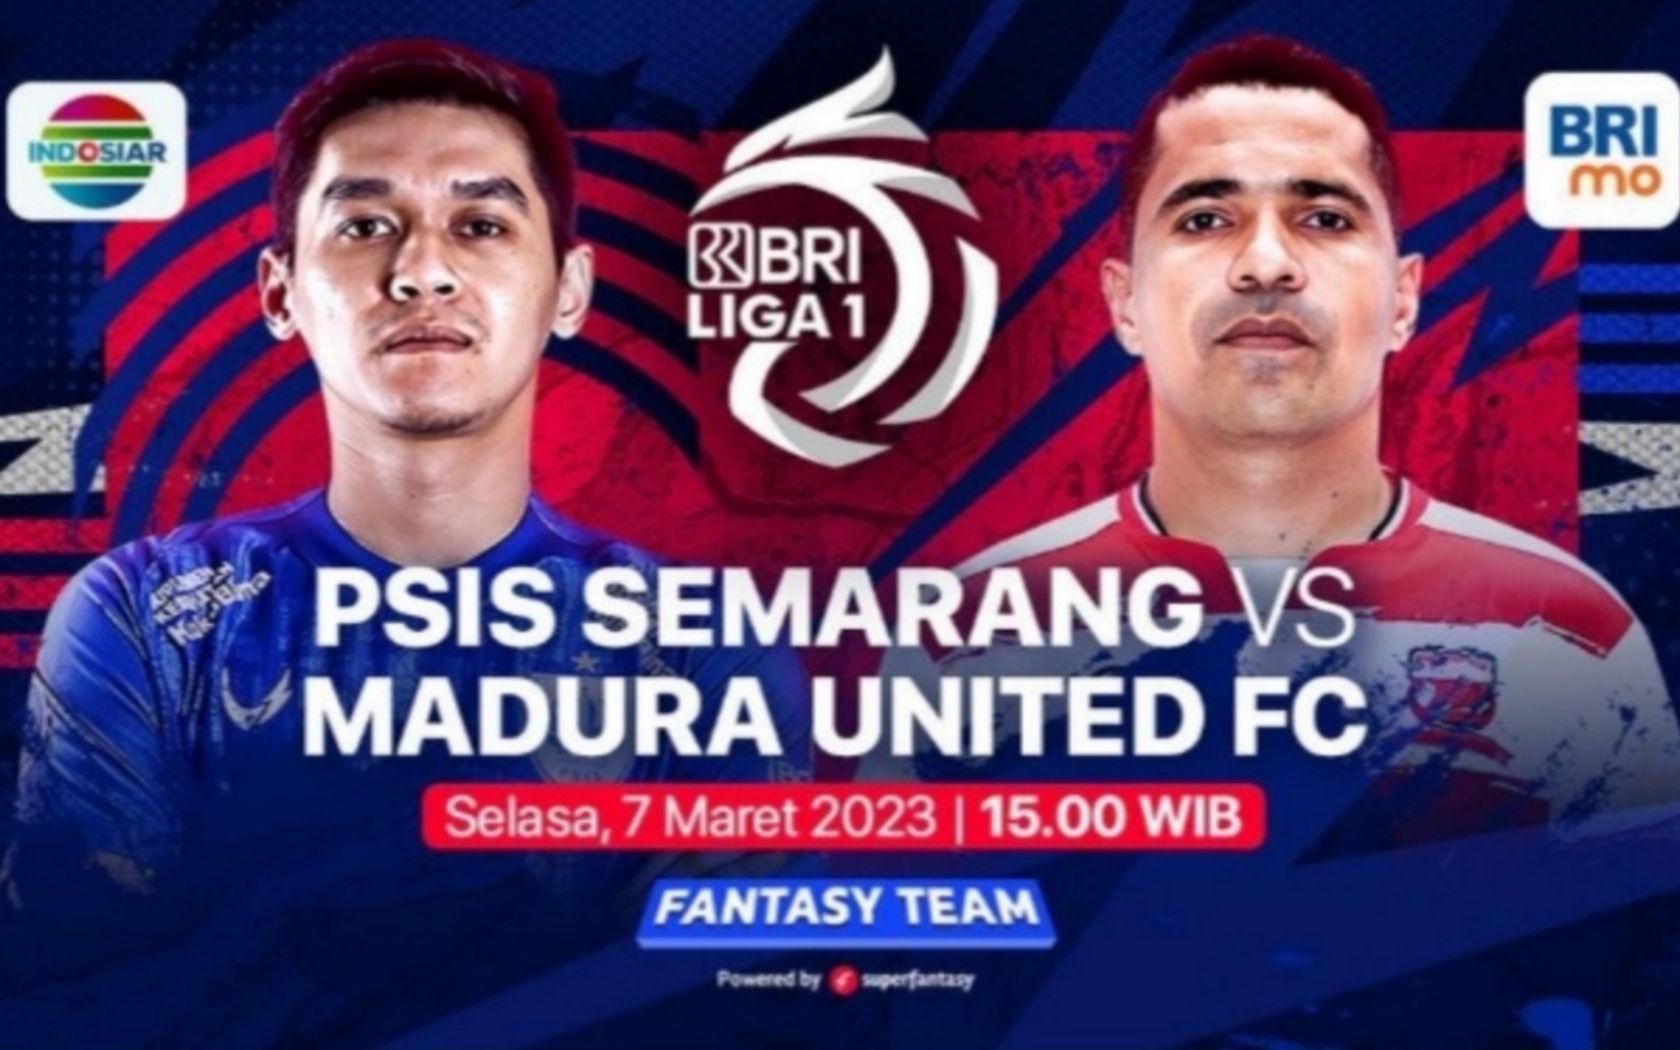 Prediksi formasi susunan pemain PSIS Semarang vs Madura United pertandingan BRI Liga 1 hari ini